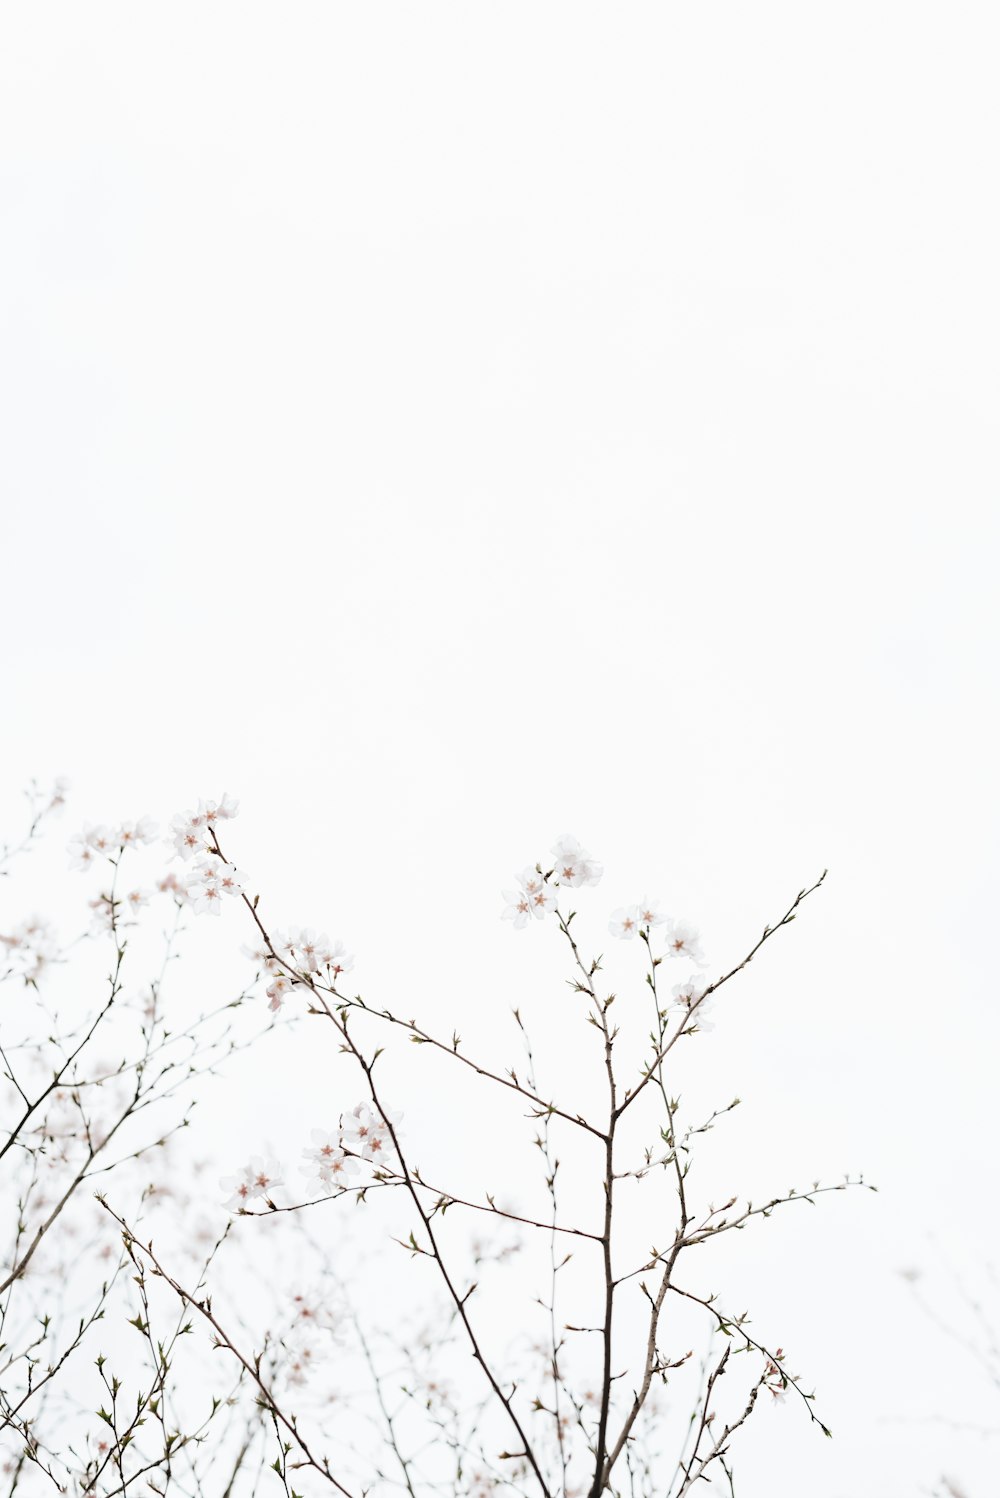 Những cánh hoa anh đào trắng tinh khiết trên nền xanh đậm là hình ảnh lung linh và đầy lãng mạn. Nếu bạn muốn cảm nhận vẻ đẹp rực rỡ của hoa anh đào, hãy không bỏ lỡ bức ảnh White cherry blossoms này.